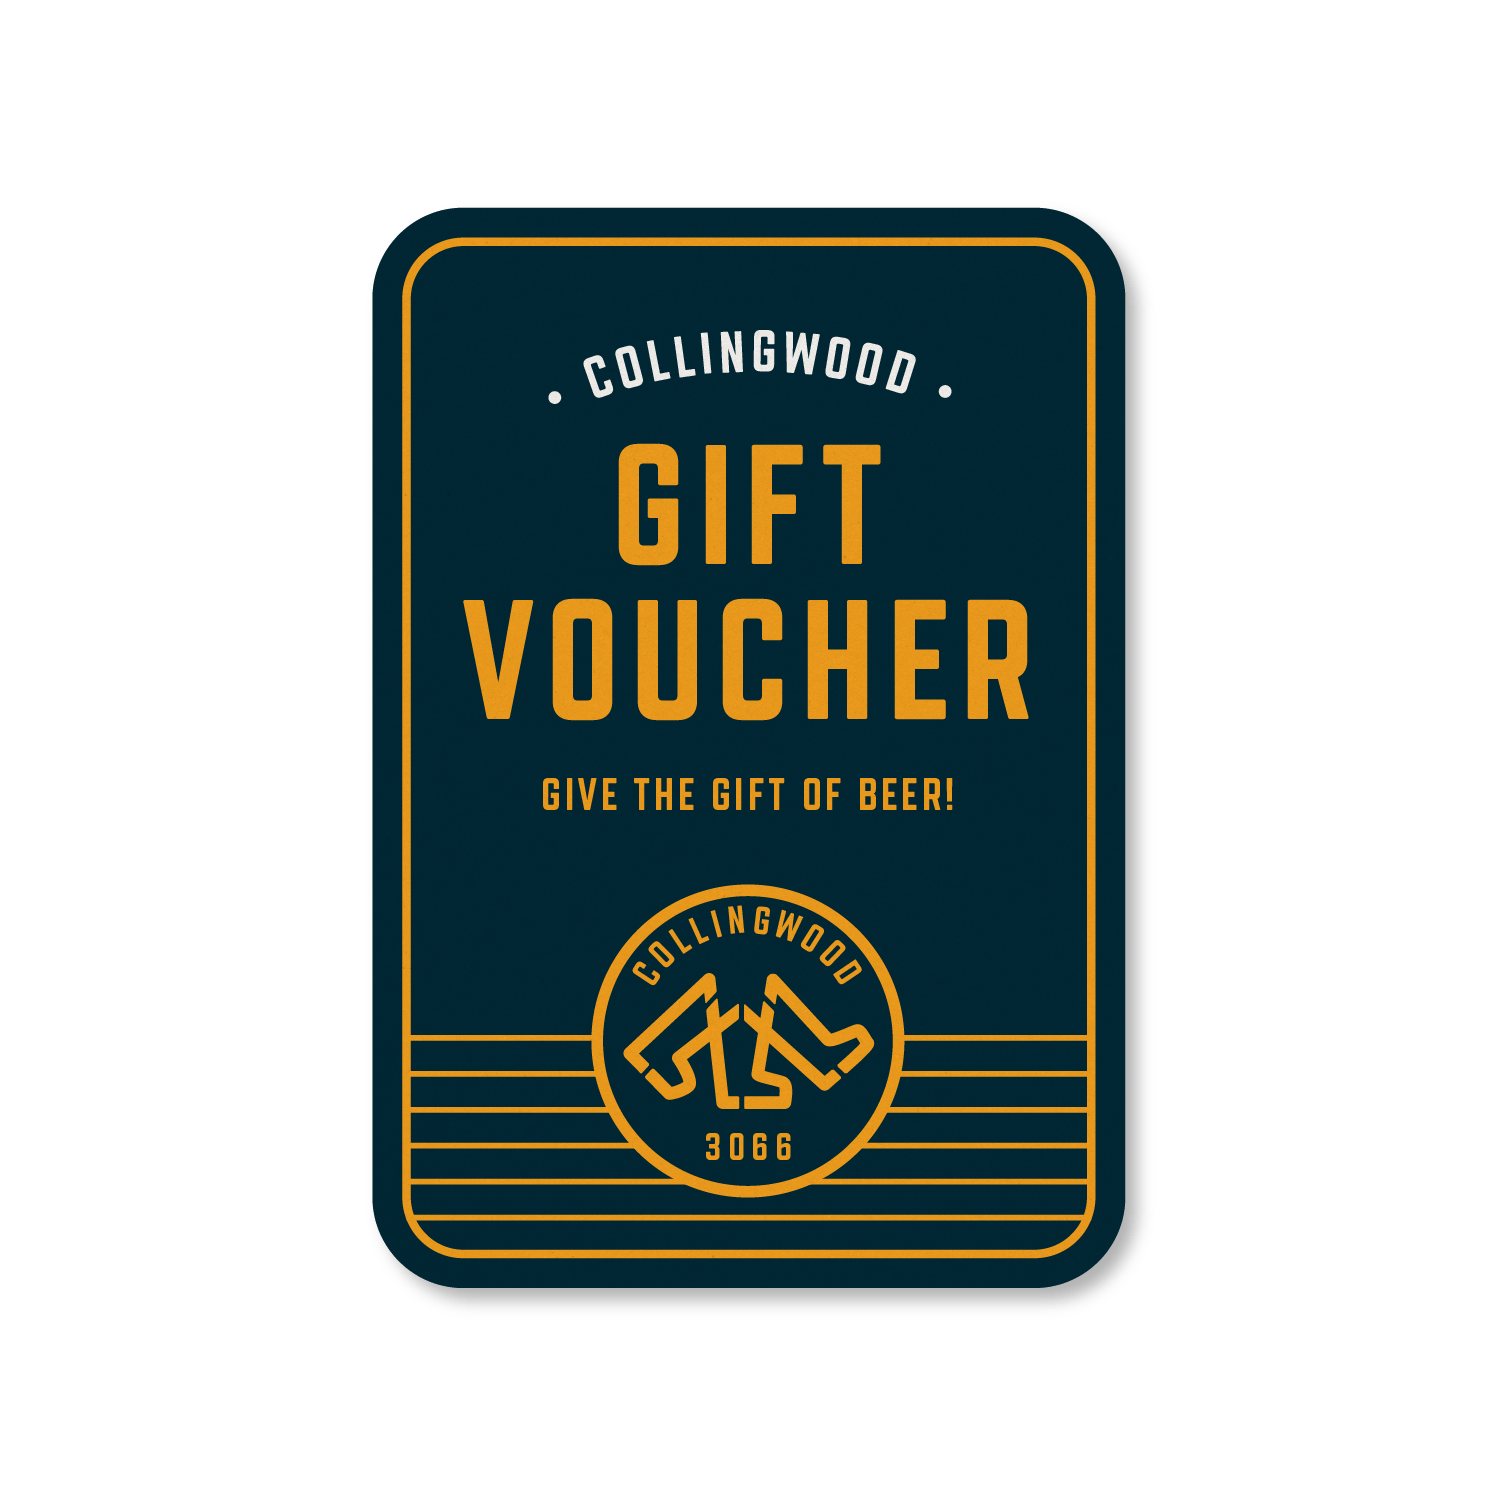 Collingwood Beer Hall Gift Voucher